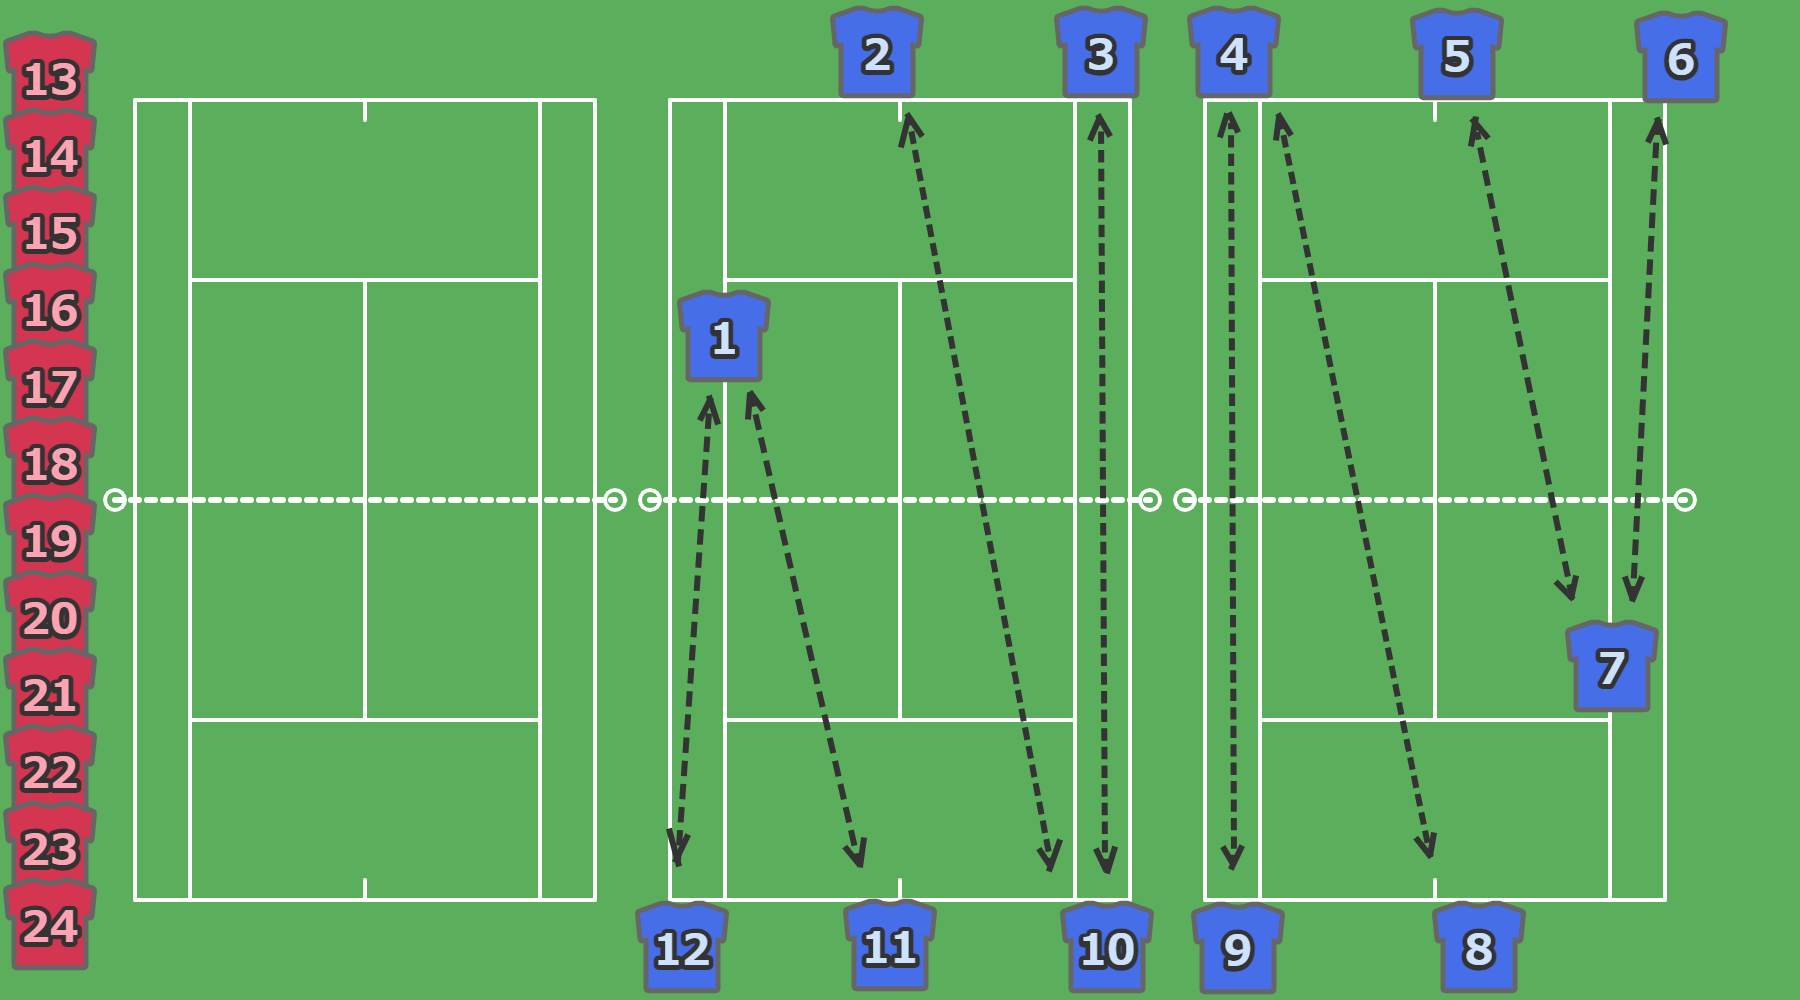 テニス作戦ボード (コート3面表示版)